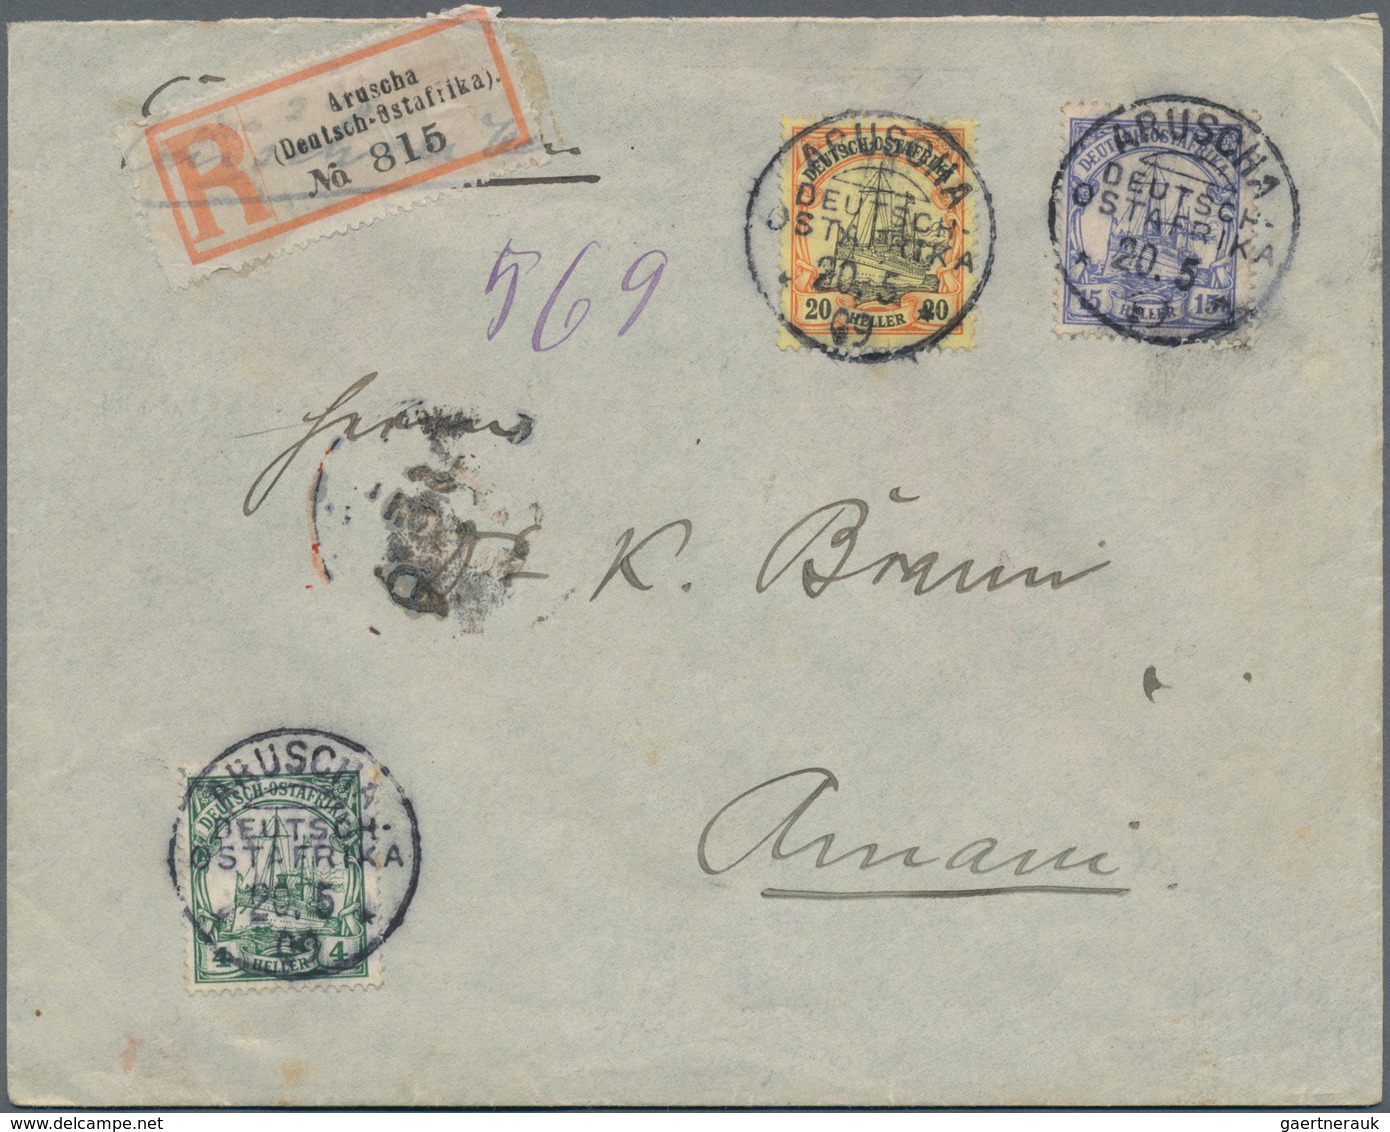 Deutsch-Ostafrika: 1892/1916, interessanter Posten mit fast 60 Briefen und Karten, dabei u.a. besser